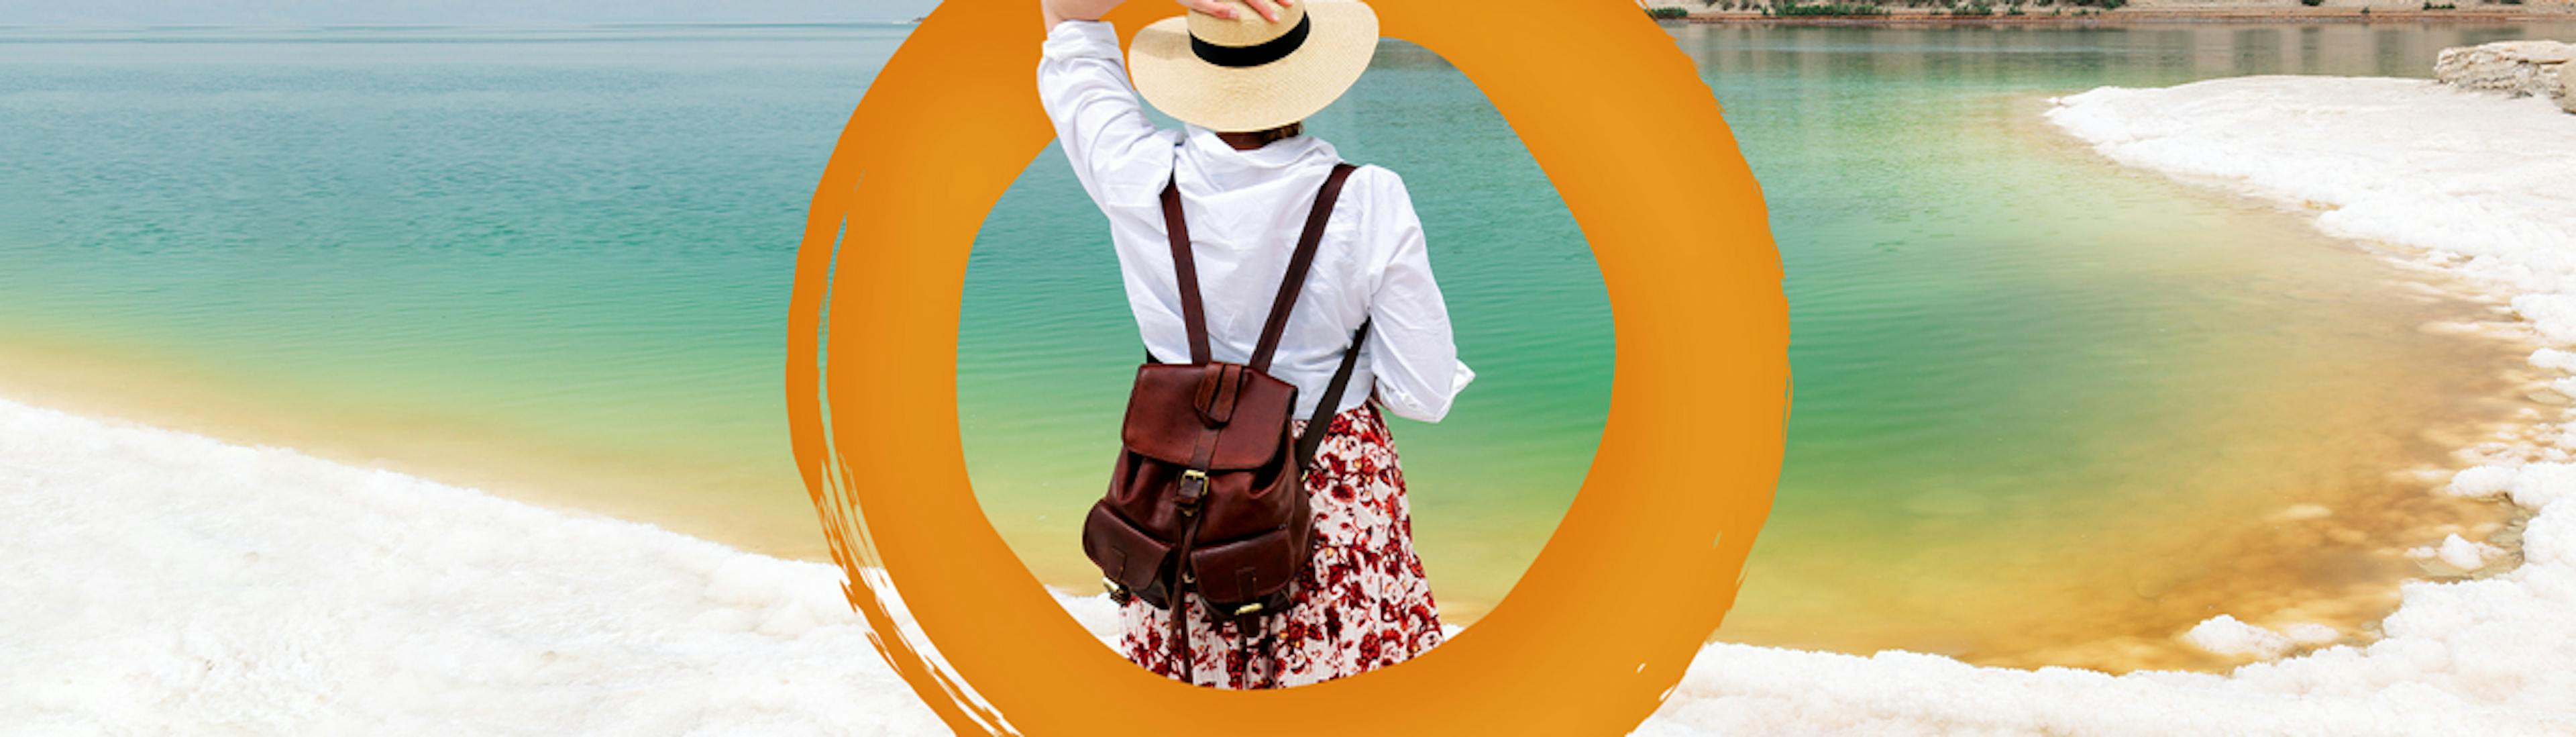 Imagen de mujer en la playa con sombrero